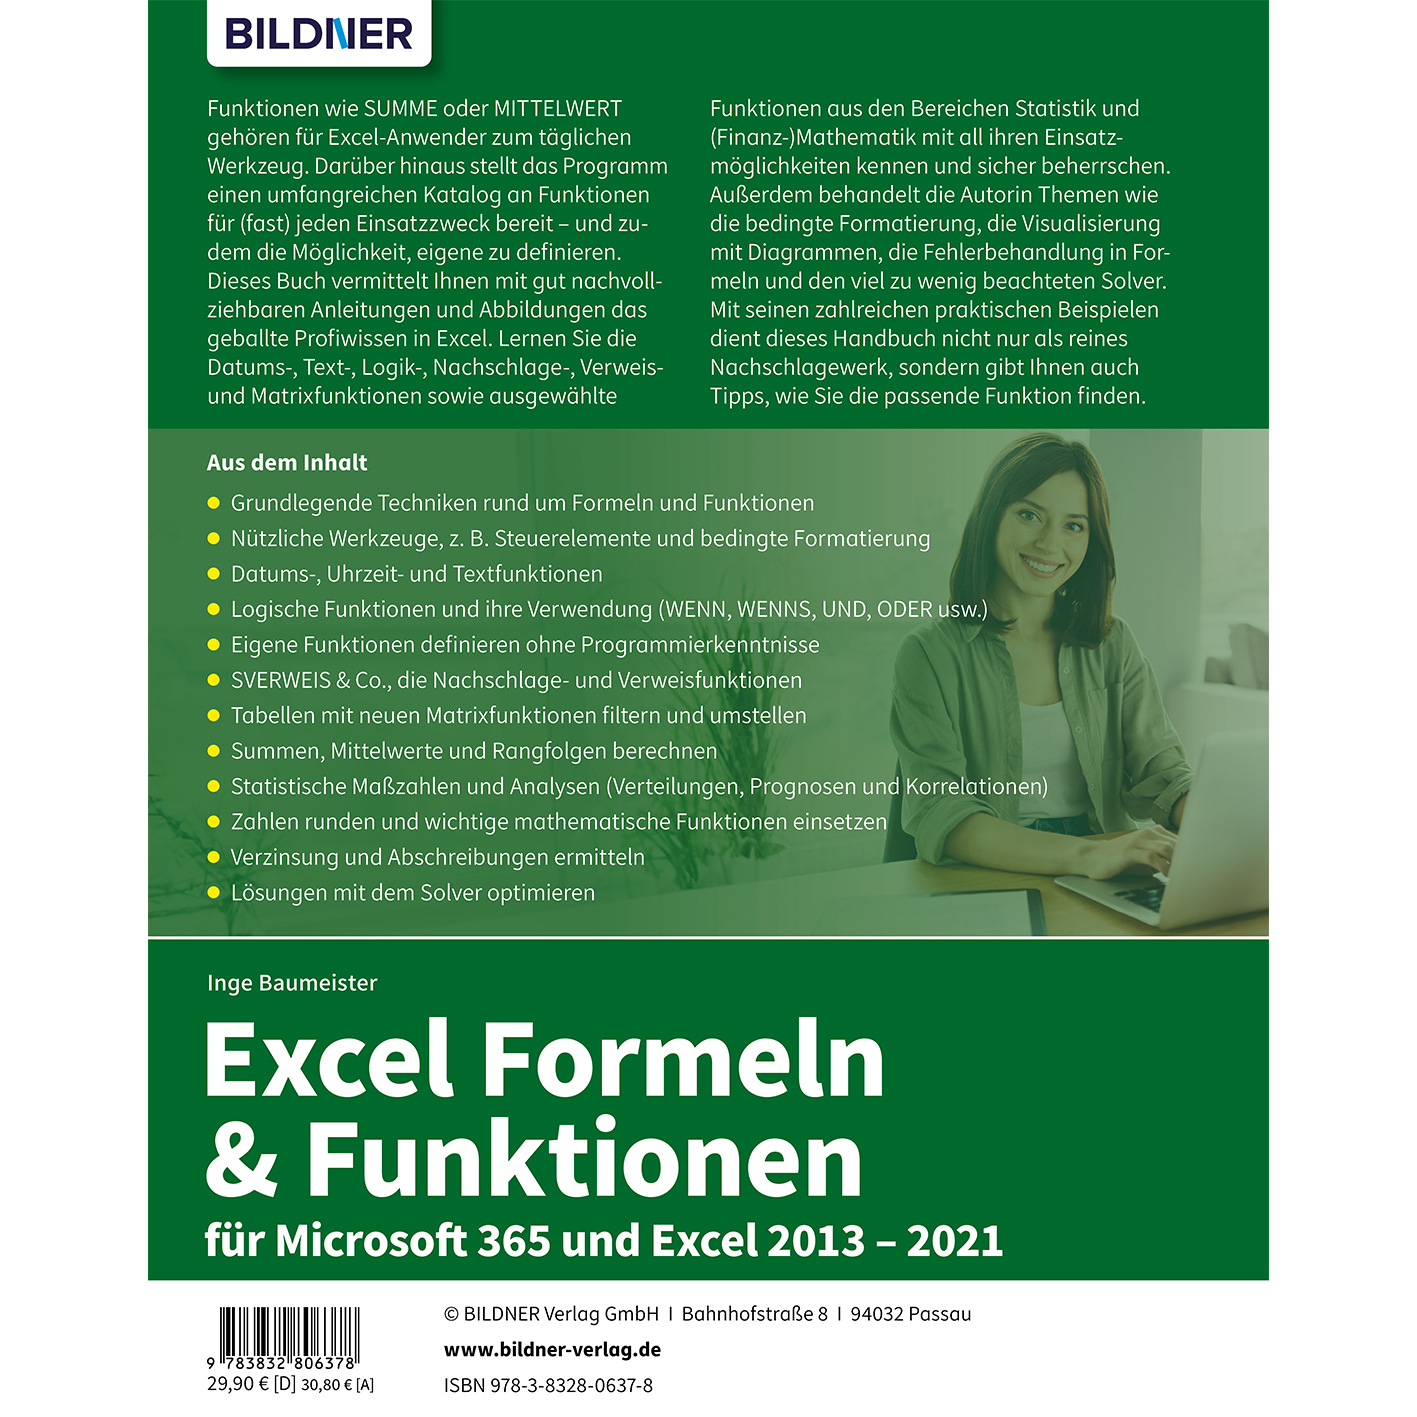 Excel Formeln & 2013-2021 Funktionen für 365 Excel und Microsoft